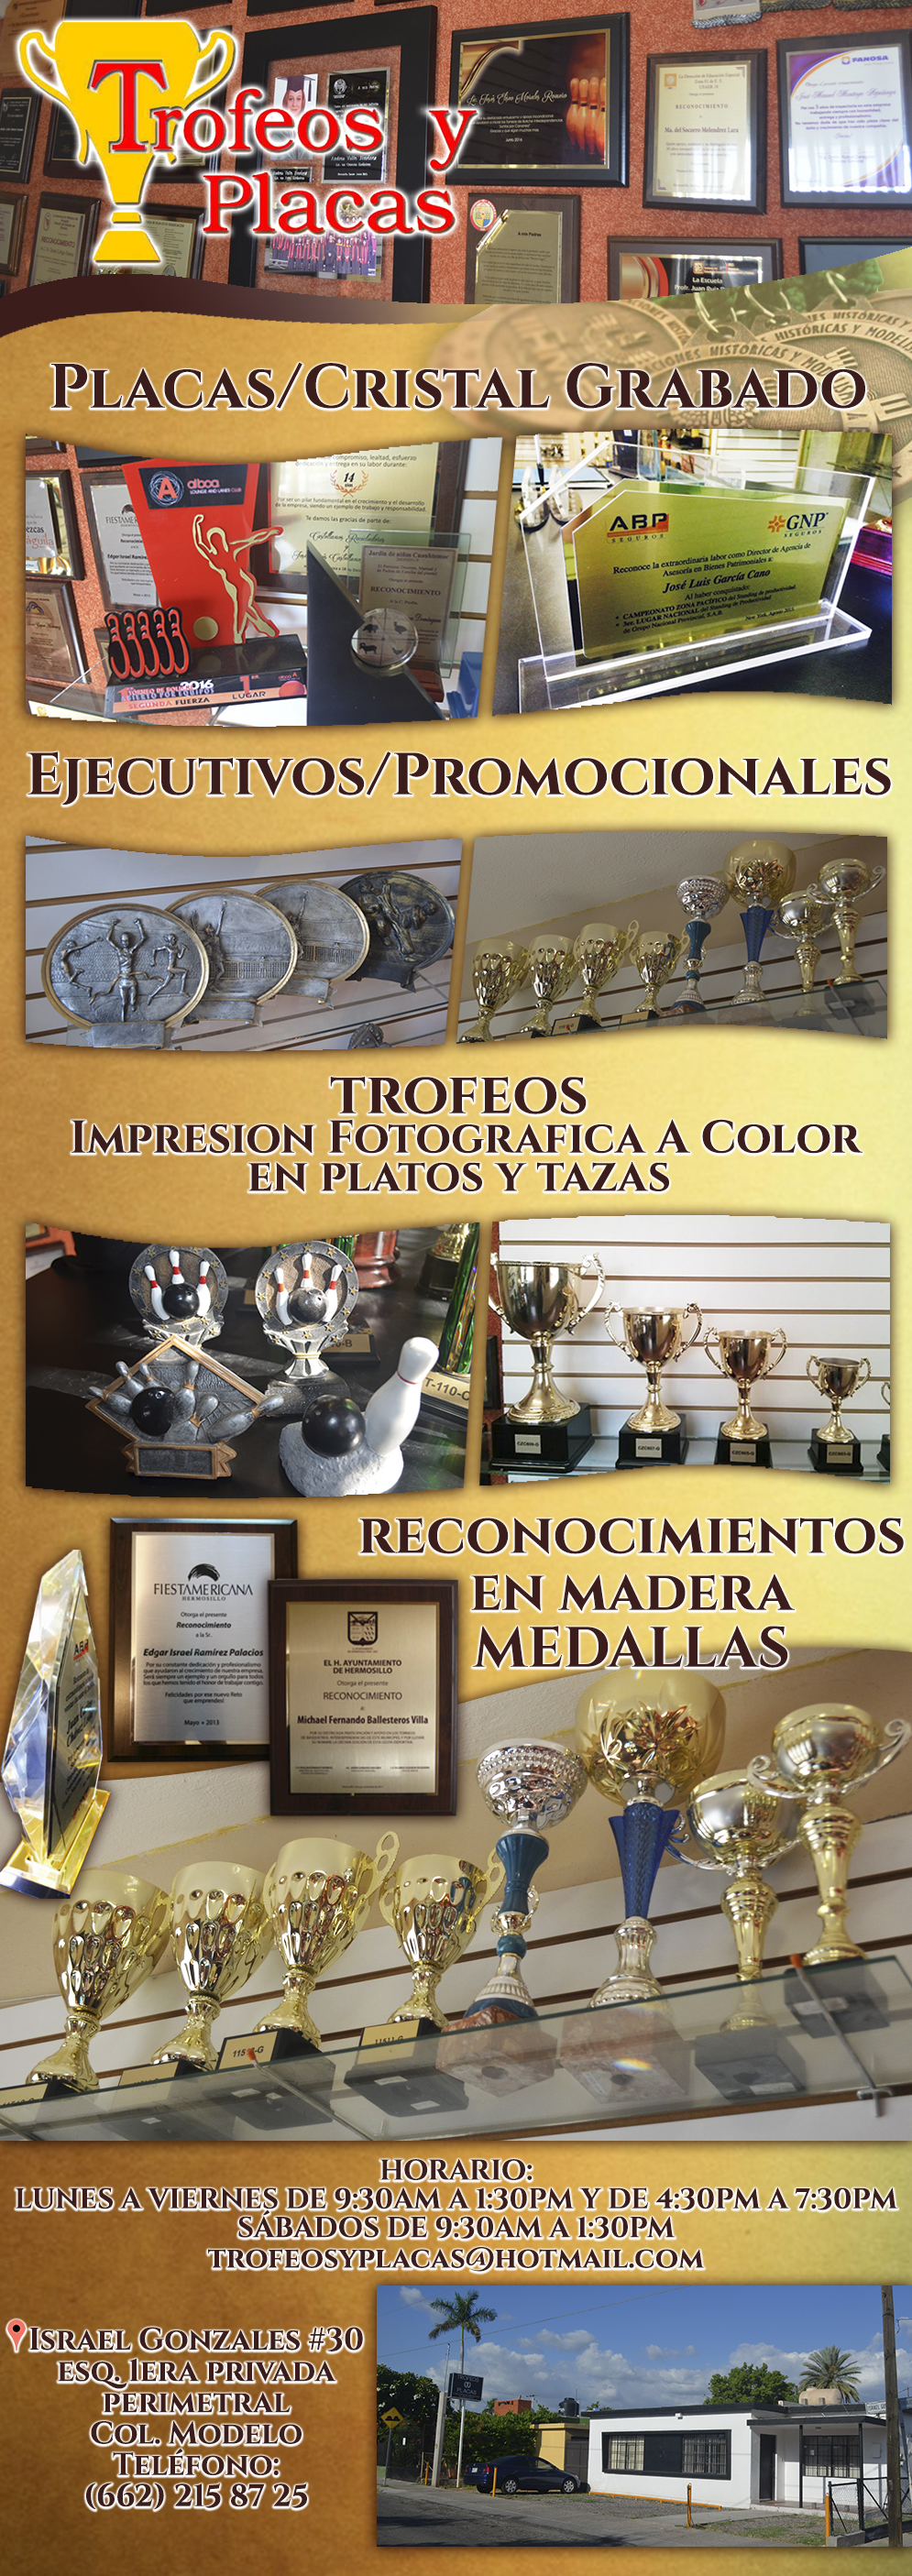 TROFEOS Y PLACAS-Contamos con todo tipo de Trofeos, medallas y Reconocimientos.Placas en cristal grabado, Reconocimientos ejecutivos y promocionales. 
Trofeos e impresion fotográfica a color en platos y tazas. Reconocimiento en madera y medallas. Sublimados y personalizadores.
                               